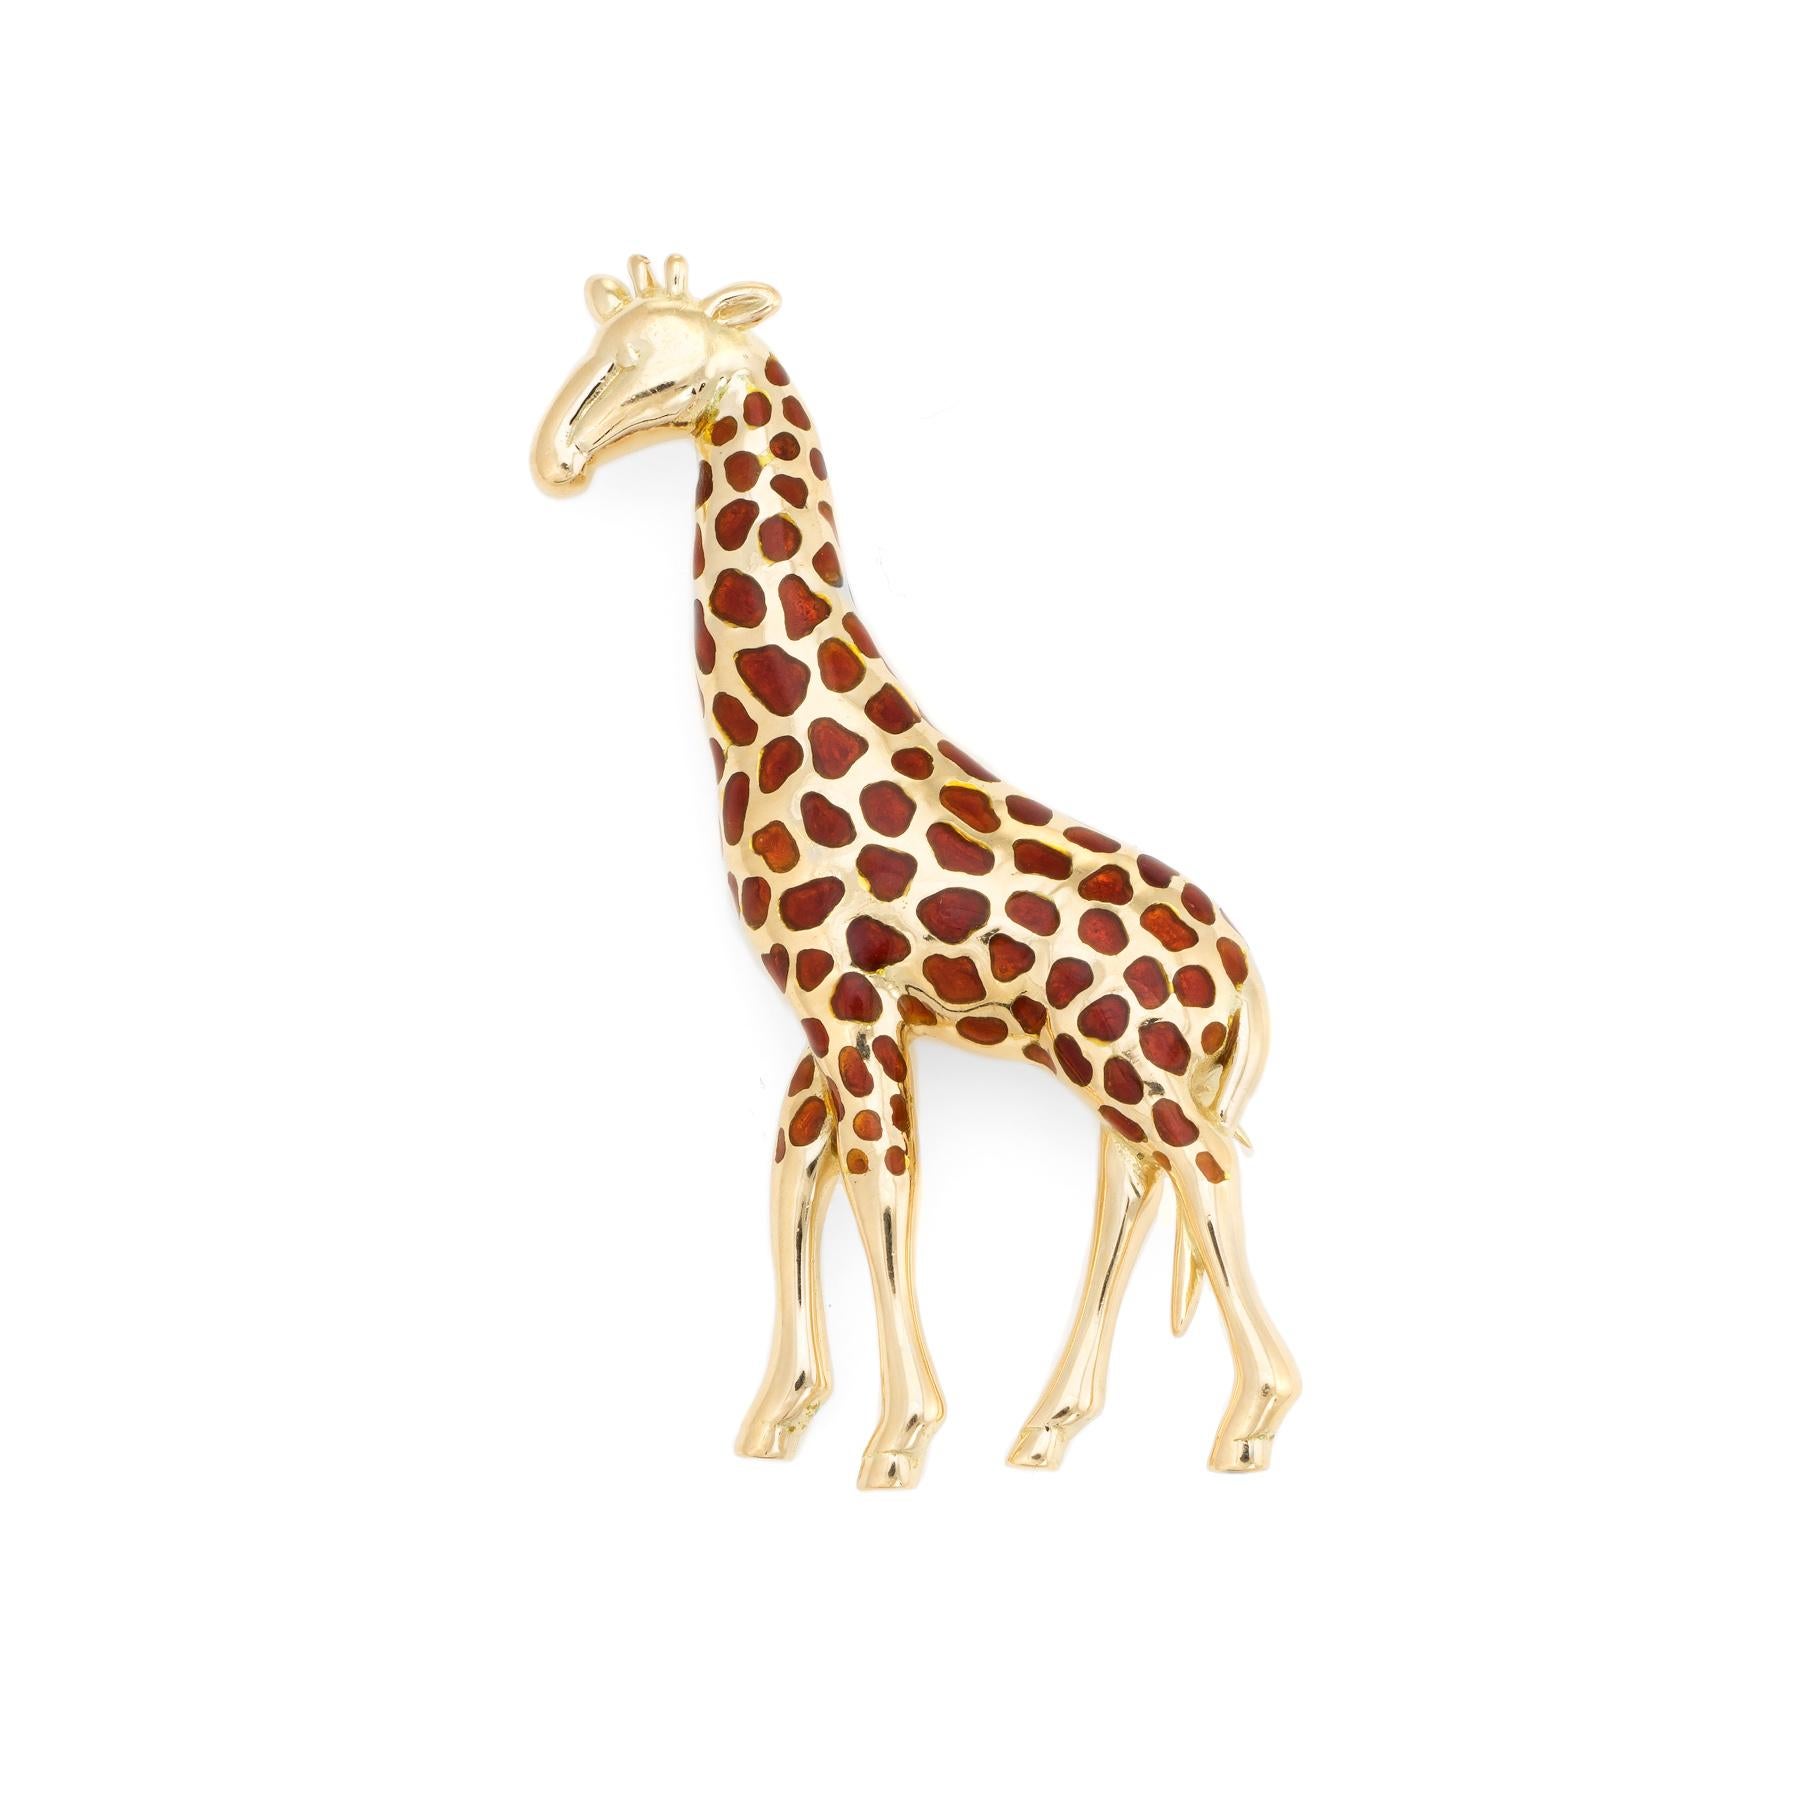 Modern Vintage Giraffe Brooch 18k Yellow Gold Pin Animal Jewelry Estate Fine Enamel